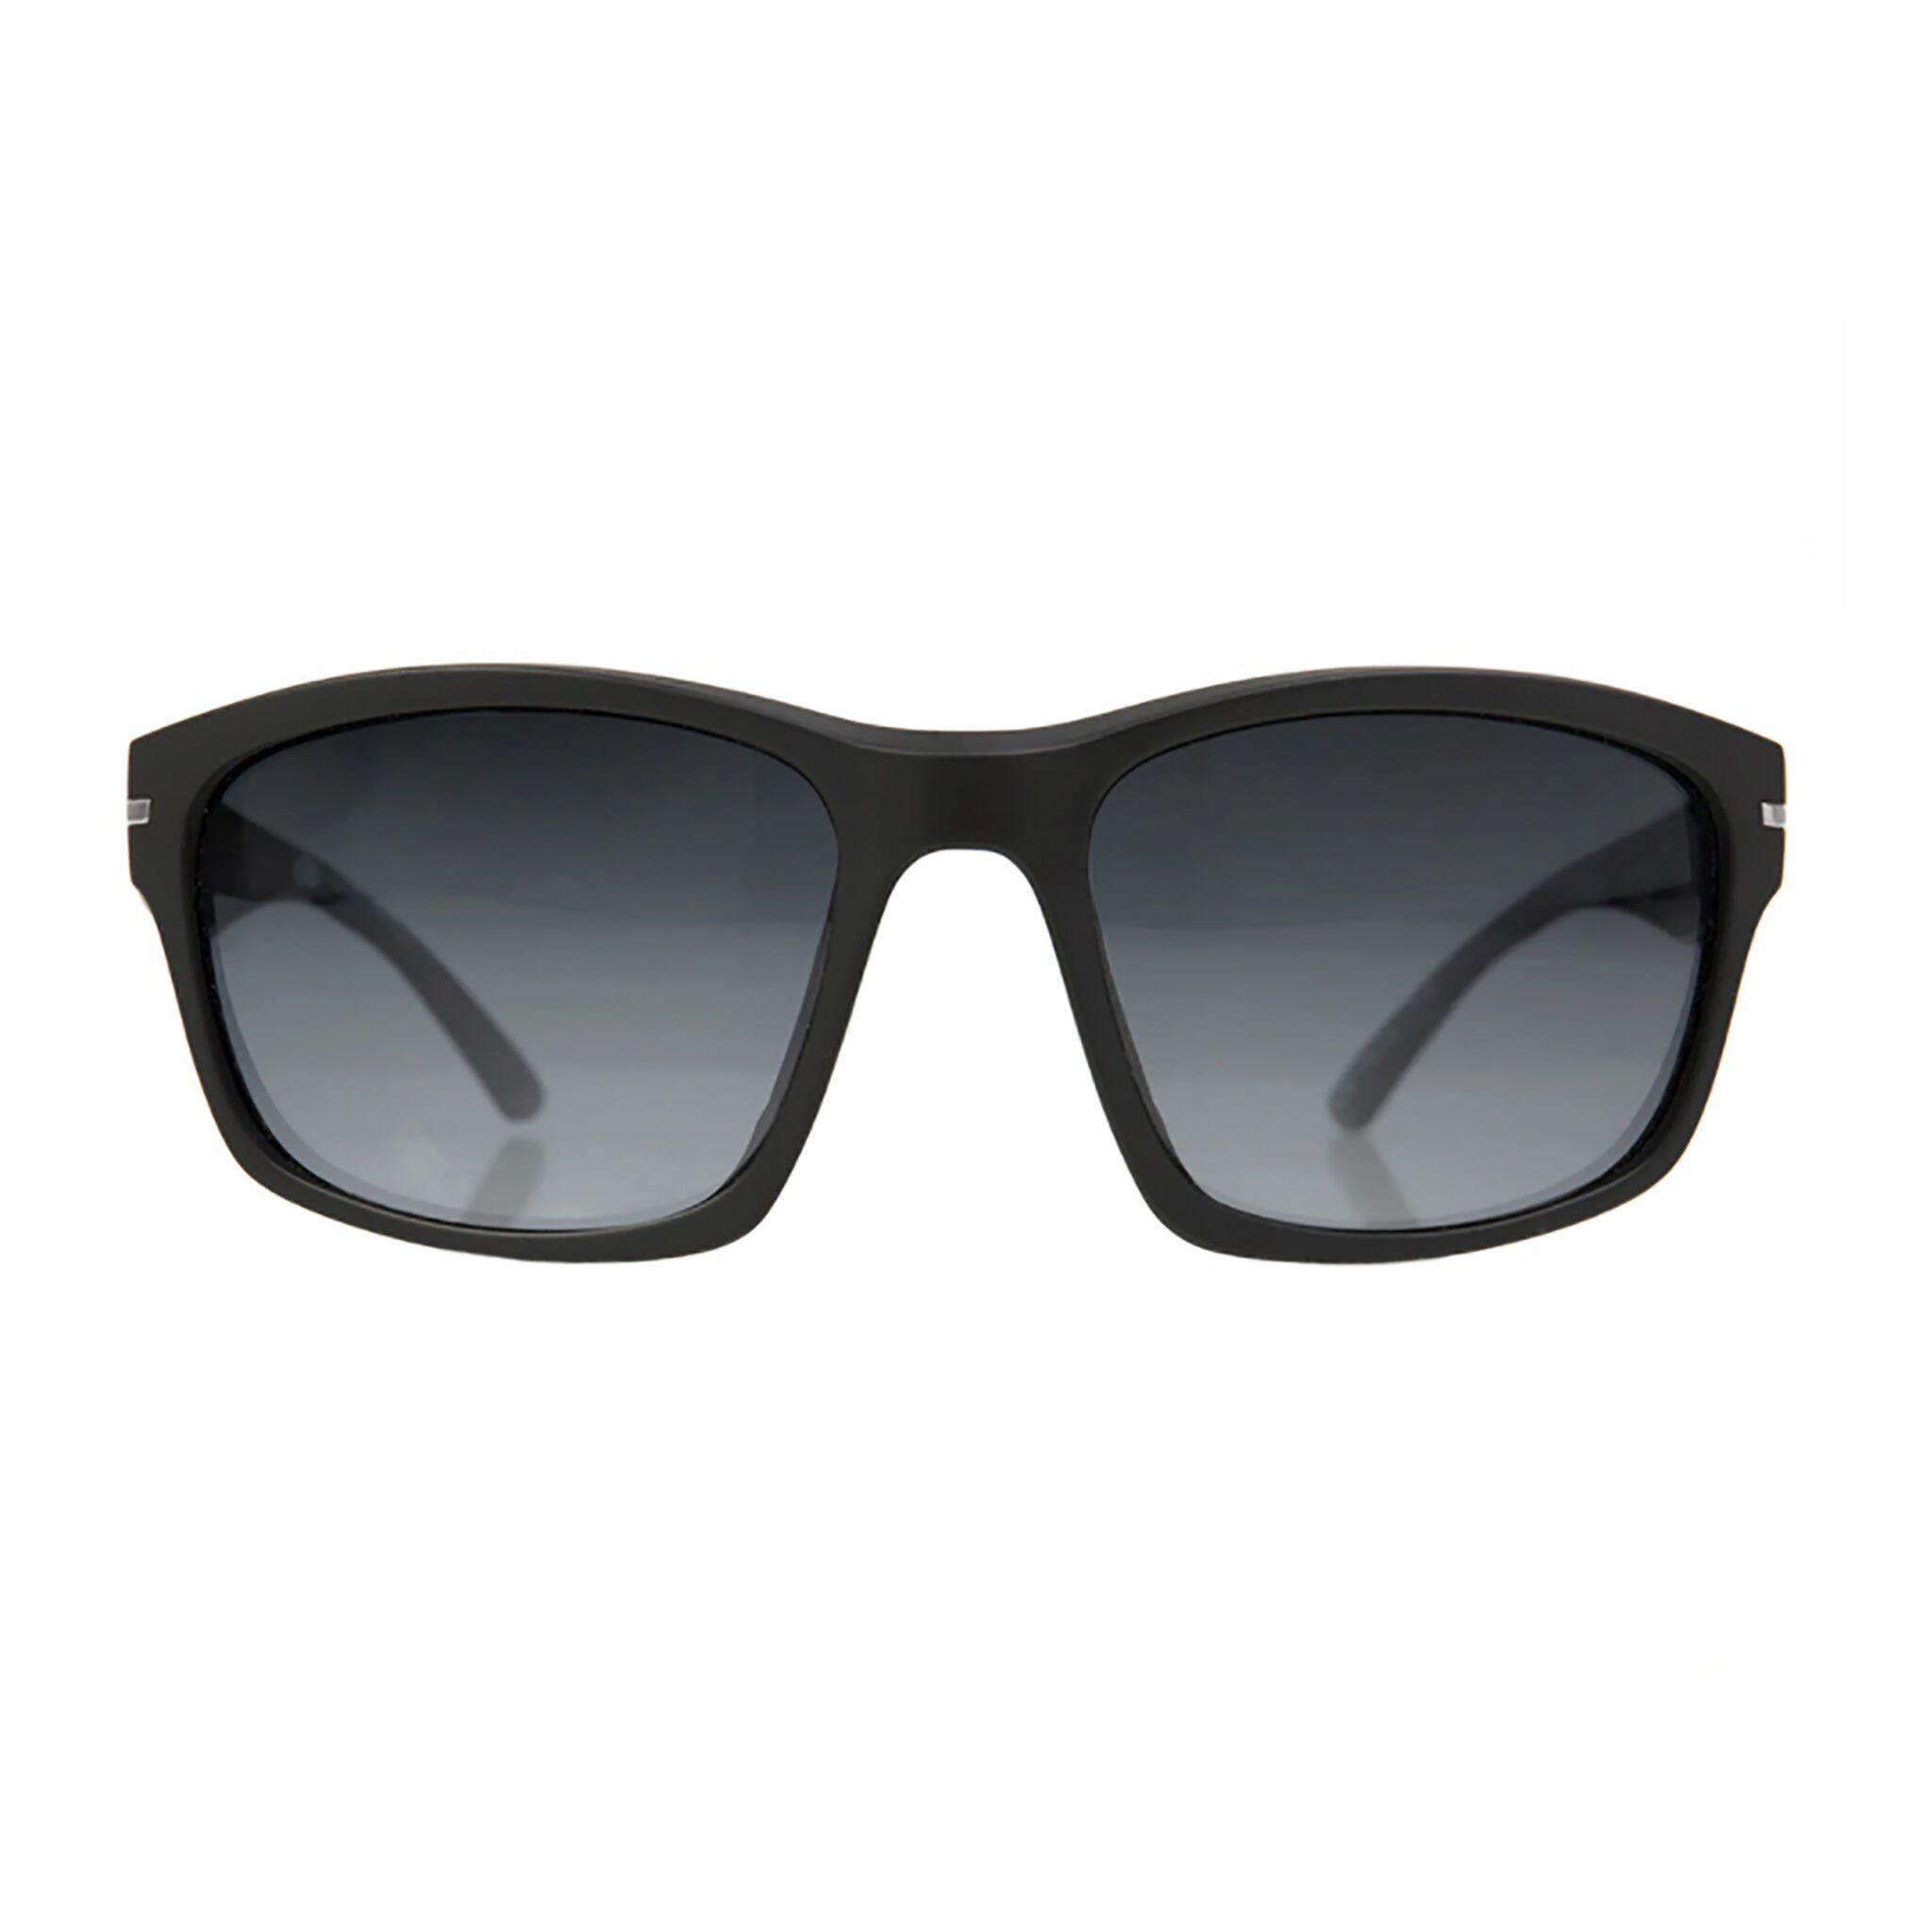 GILL men's sunglasses \Reflex\/ black"""""""